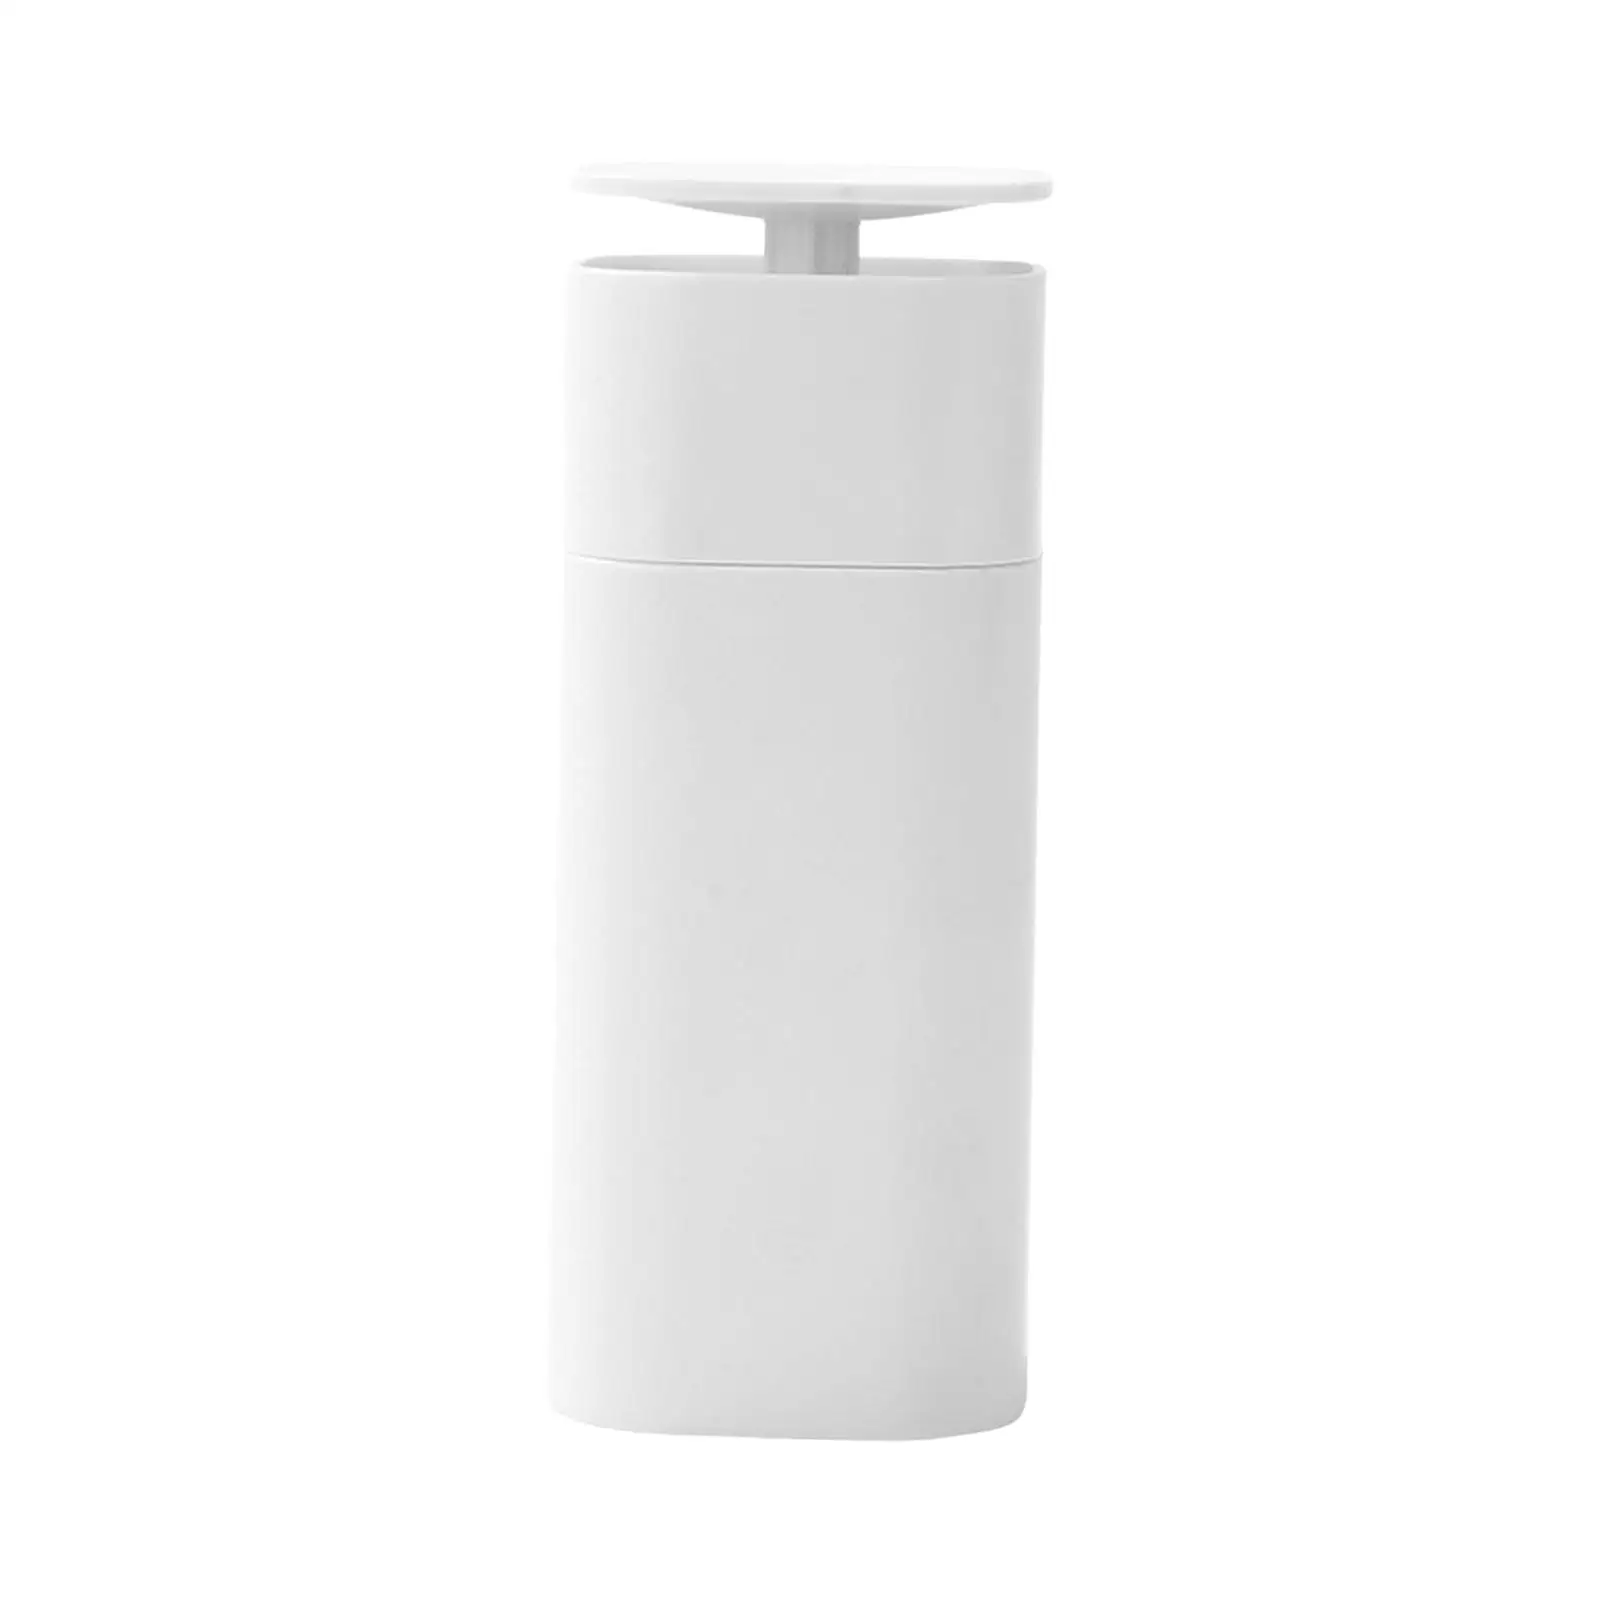 Shower Dispenser Refillable Empty Bottles Reusable Container Liquid Soap Dispenser for Home Restaurant Kitchen Bathroom